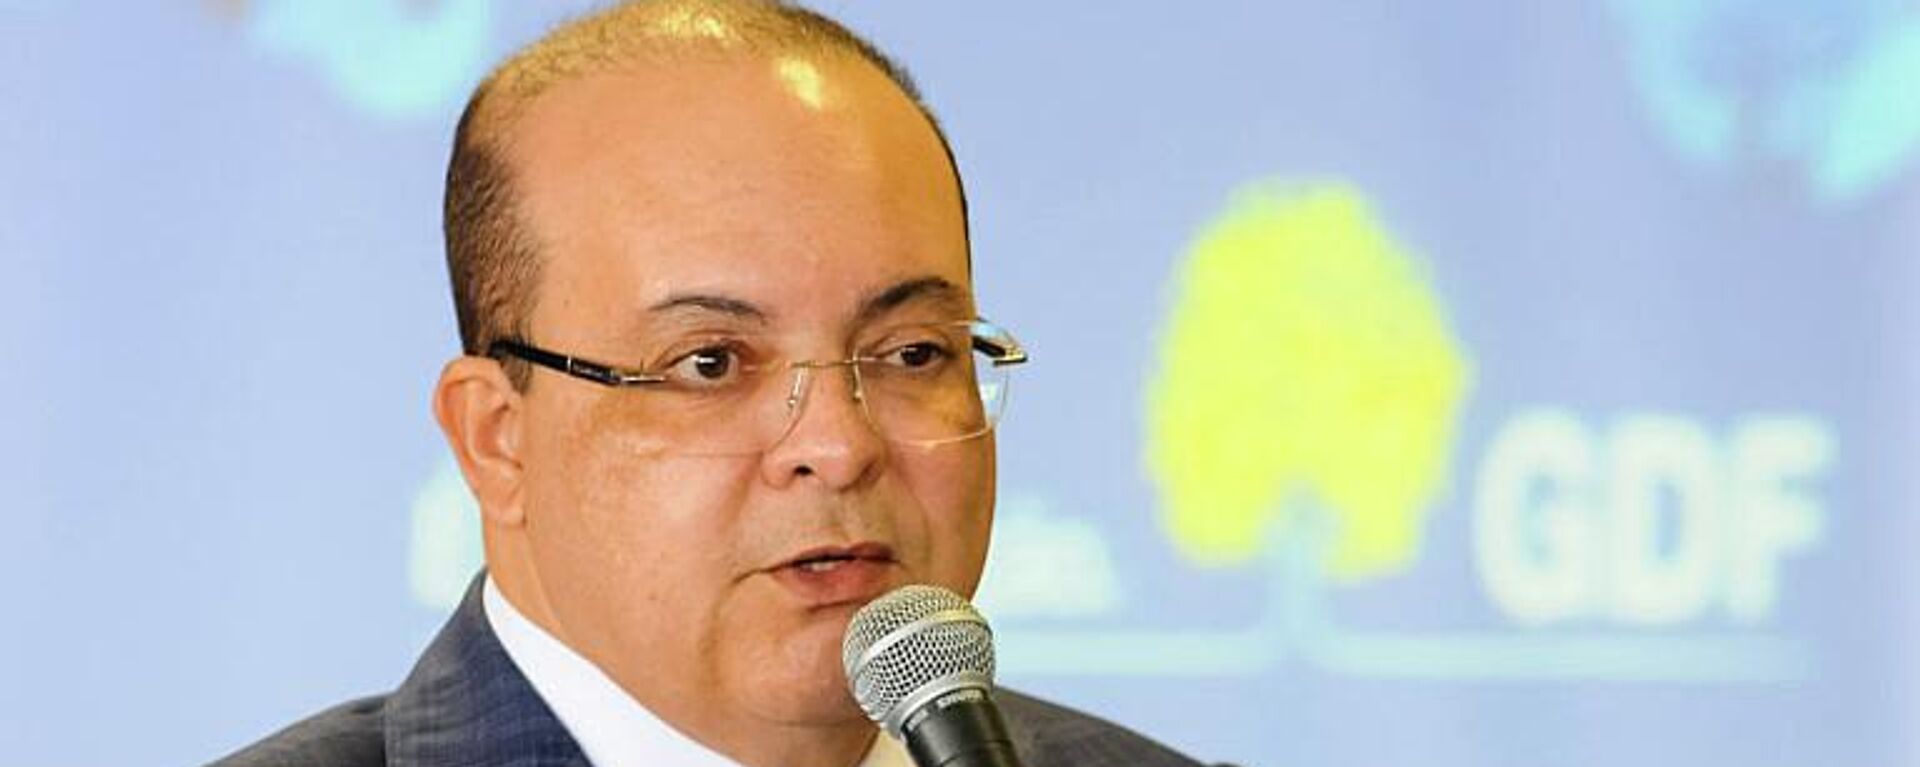 Governador do Distrito Federal, Ibaneis Rocha (MDB) é reeleito ao cargo em 2022 - Sputnik Brasil, 1920, 11.01.2023